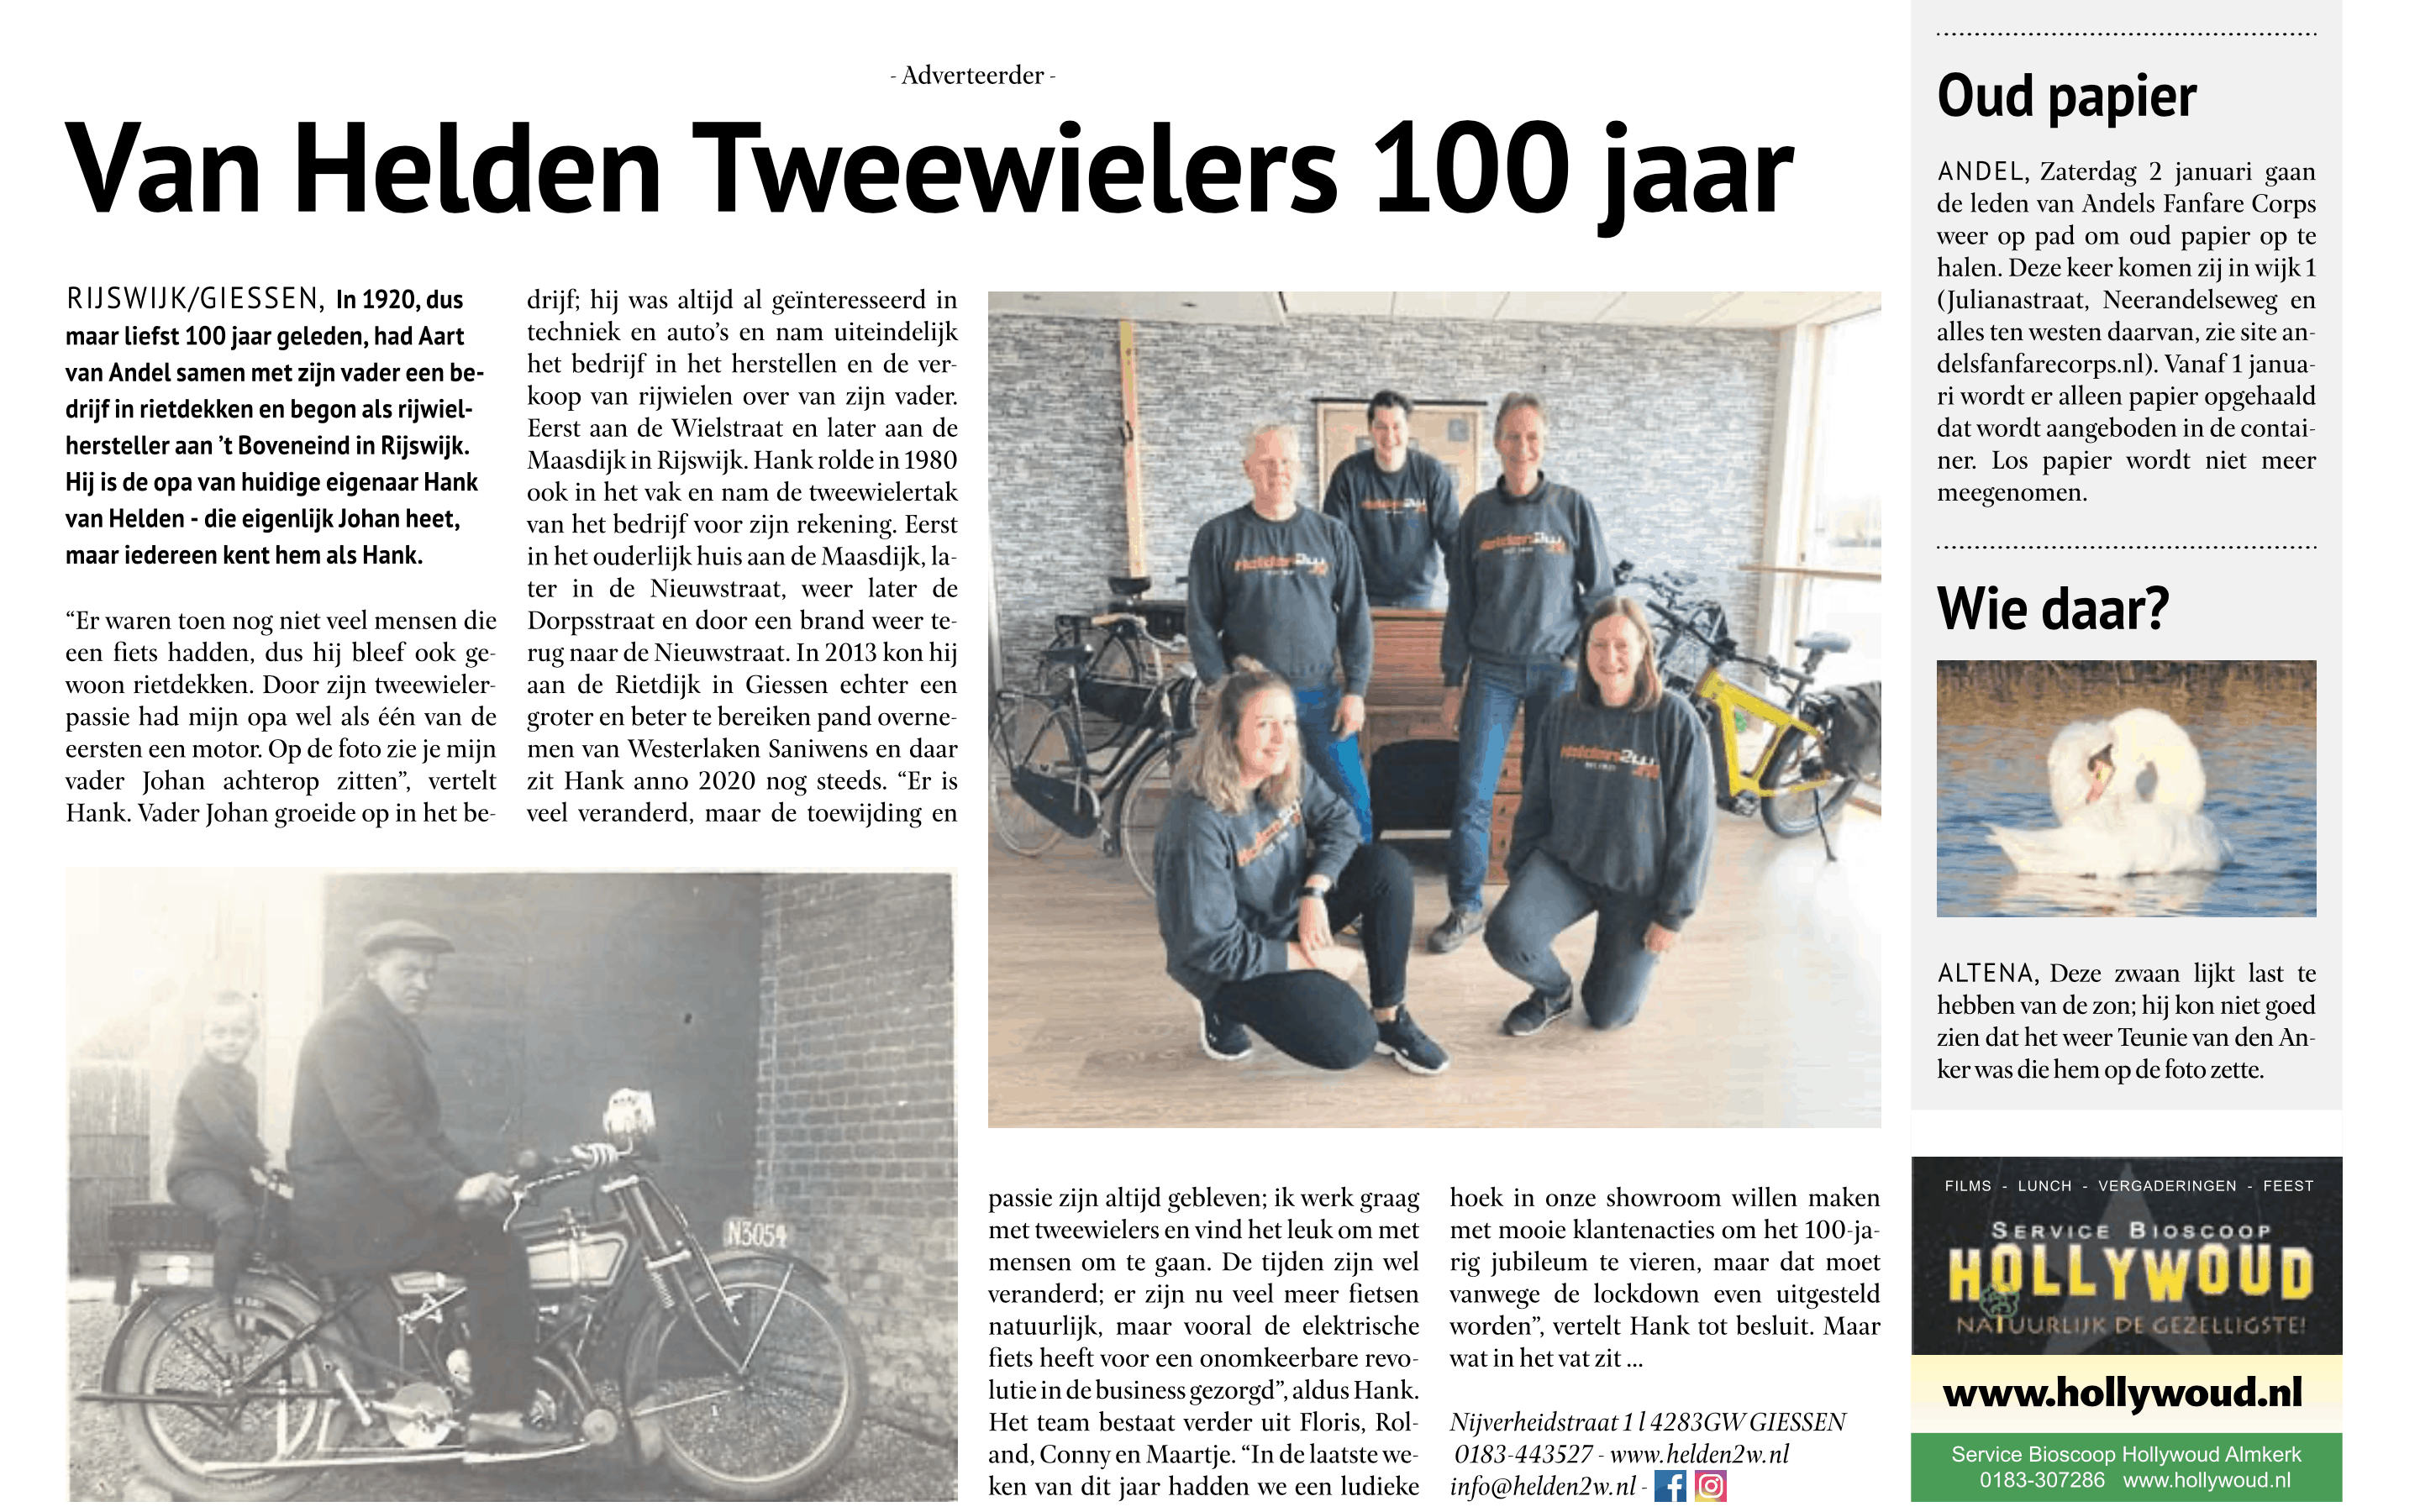 Van Helden Tweewielers bestaat 100 jaar